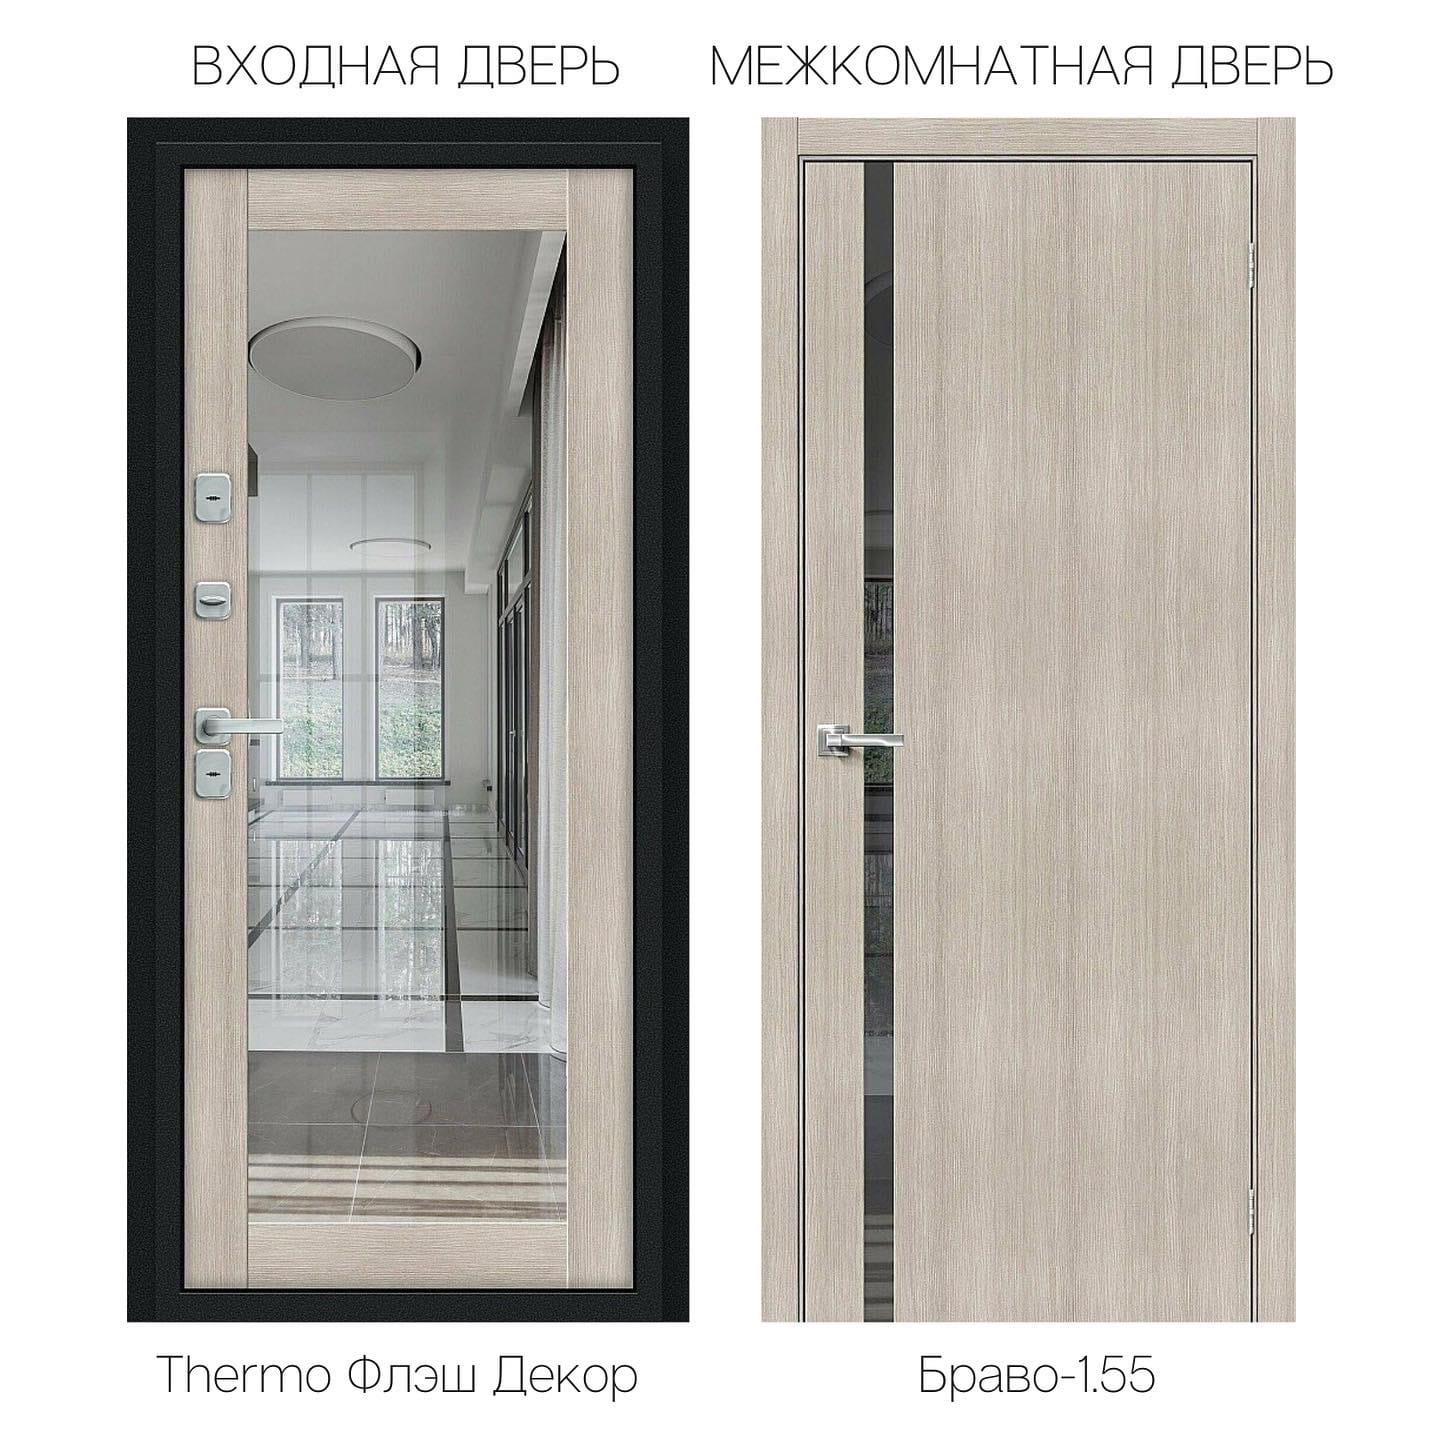 магазин-салон дверей VSEDVERI60.ru